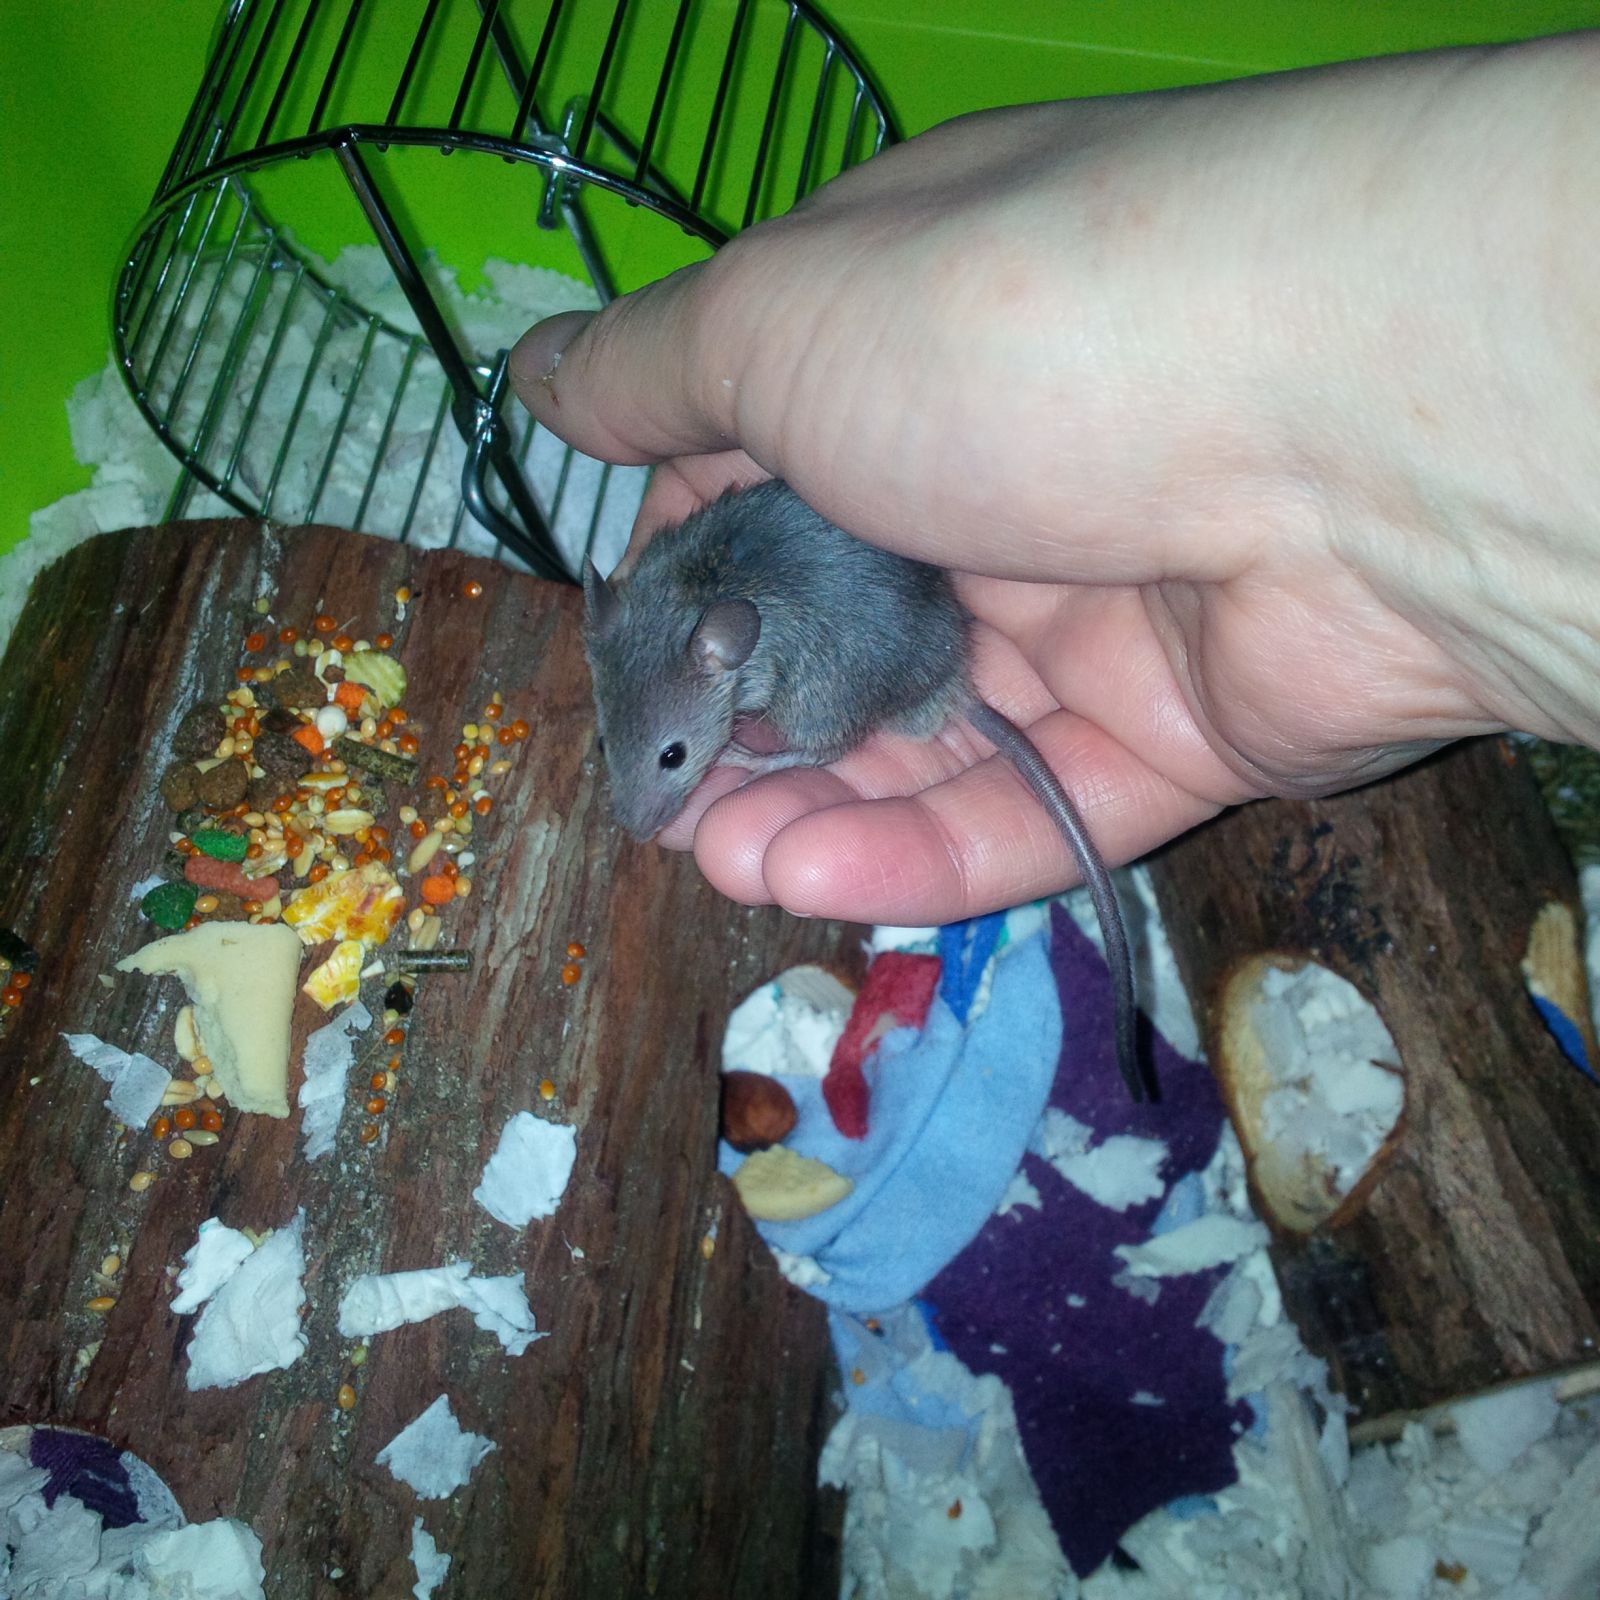 Wilde muis in handpalm in een kooi met voedsel